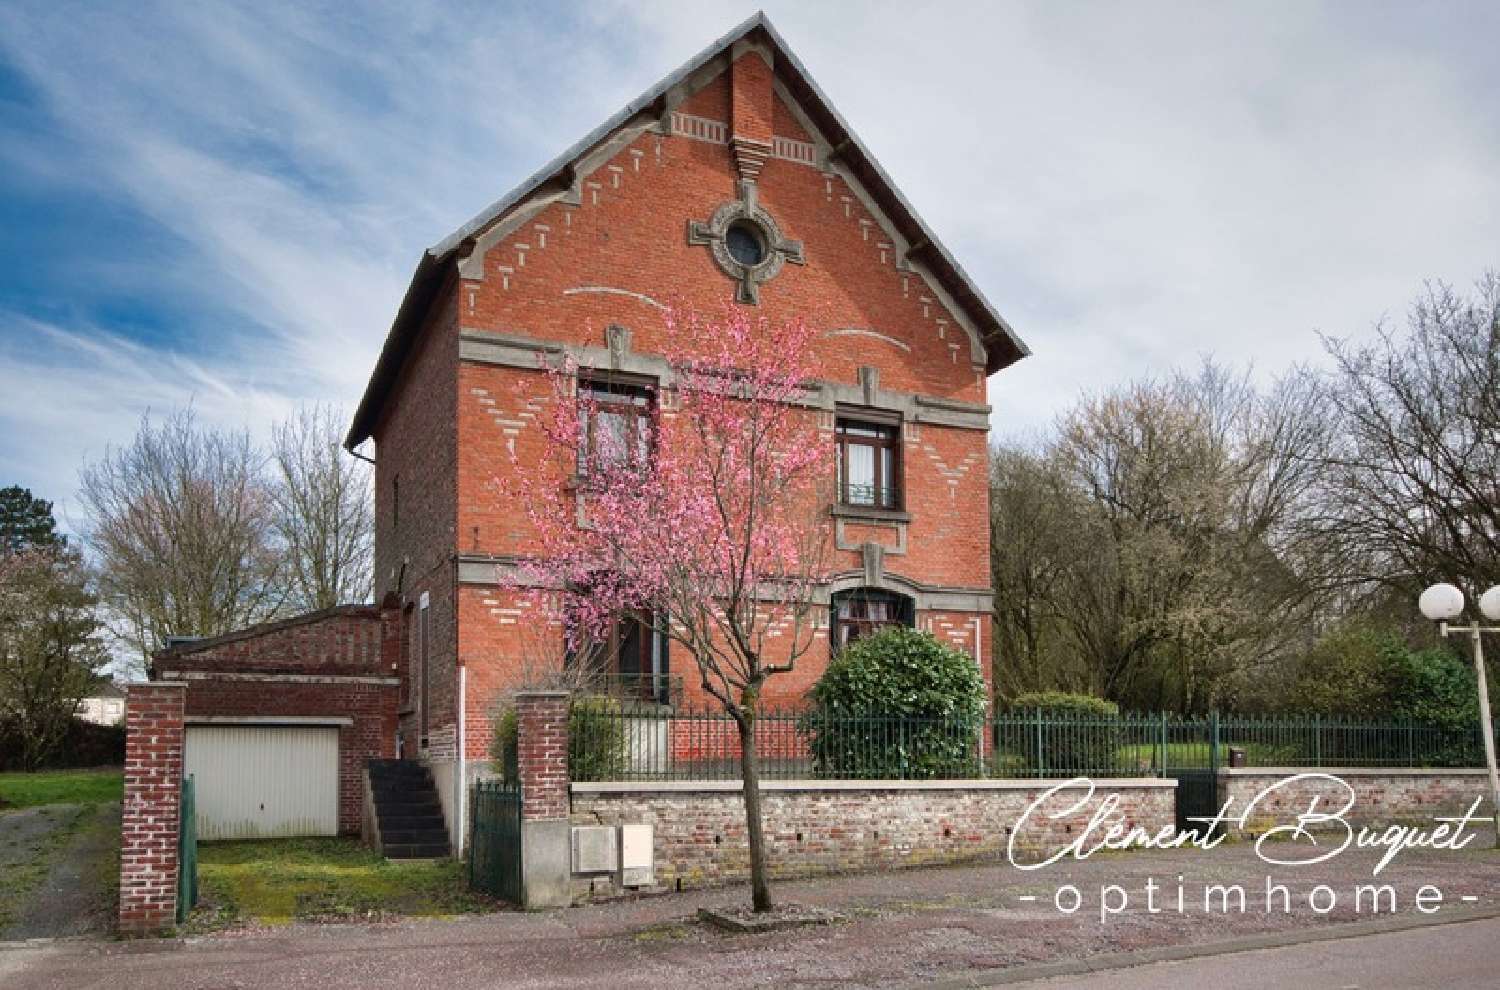  à vendre maison bourgeoise Le Nouvion-en-Thiérache Aisne 2